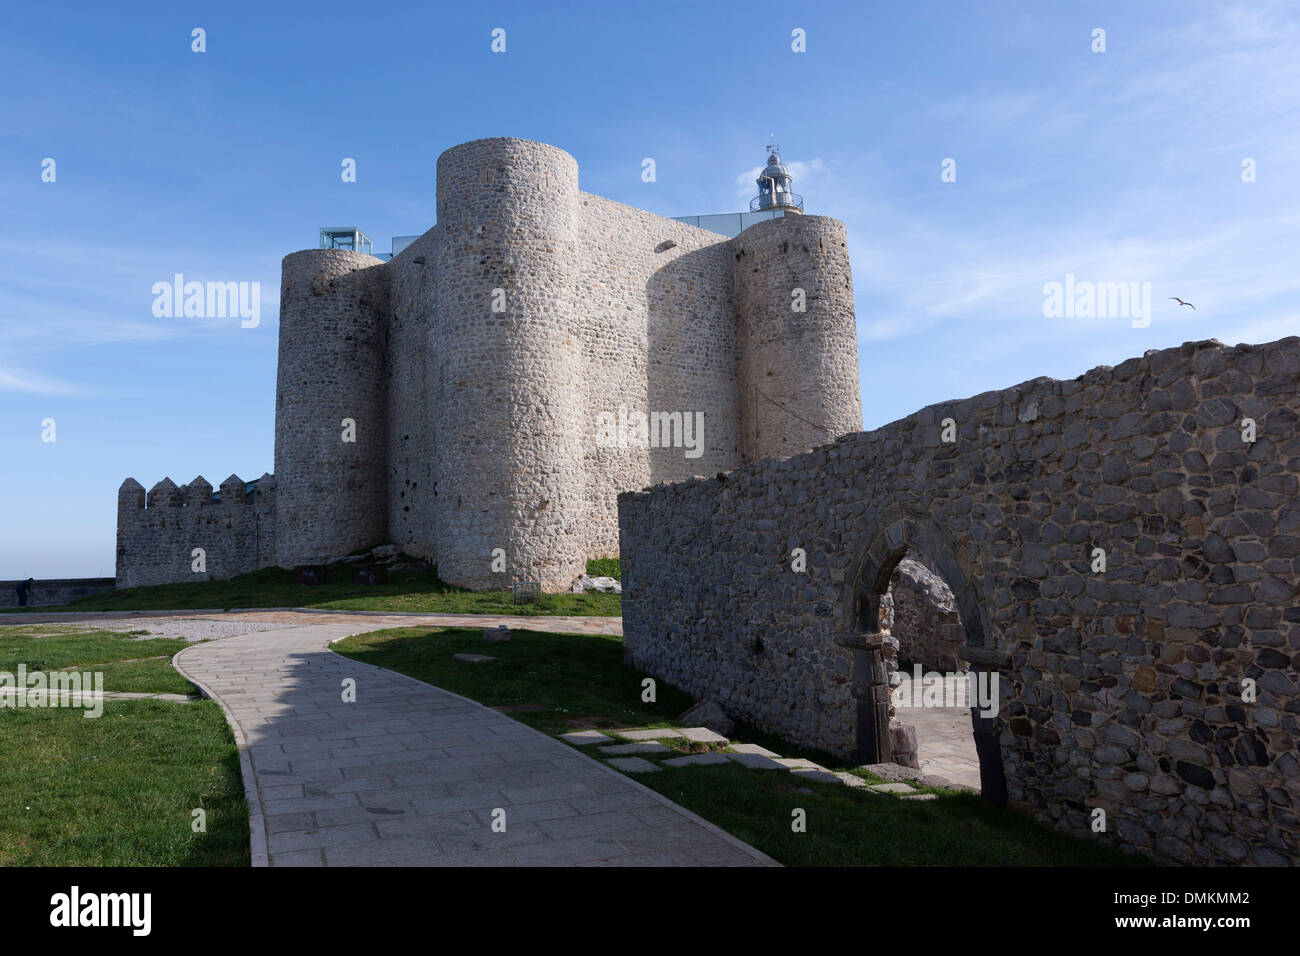 Castillo de Santa Ana se encuentra situado cerca del puerto de Castro Urdiales y albergaba un faro, Cantabria, ESPAÑA Foto de stock